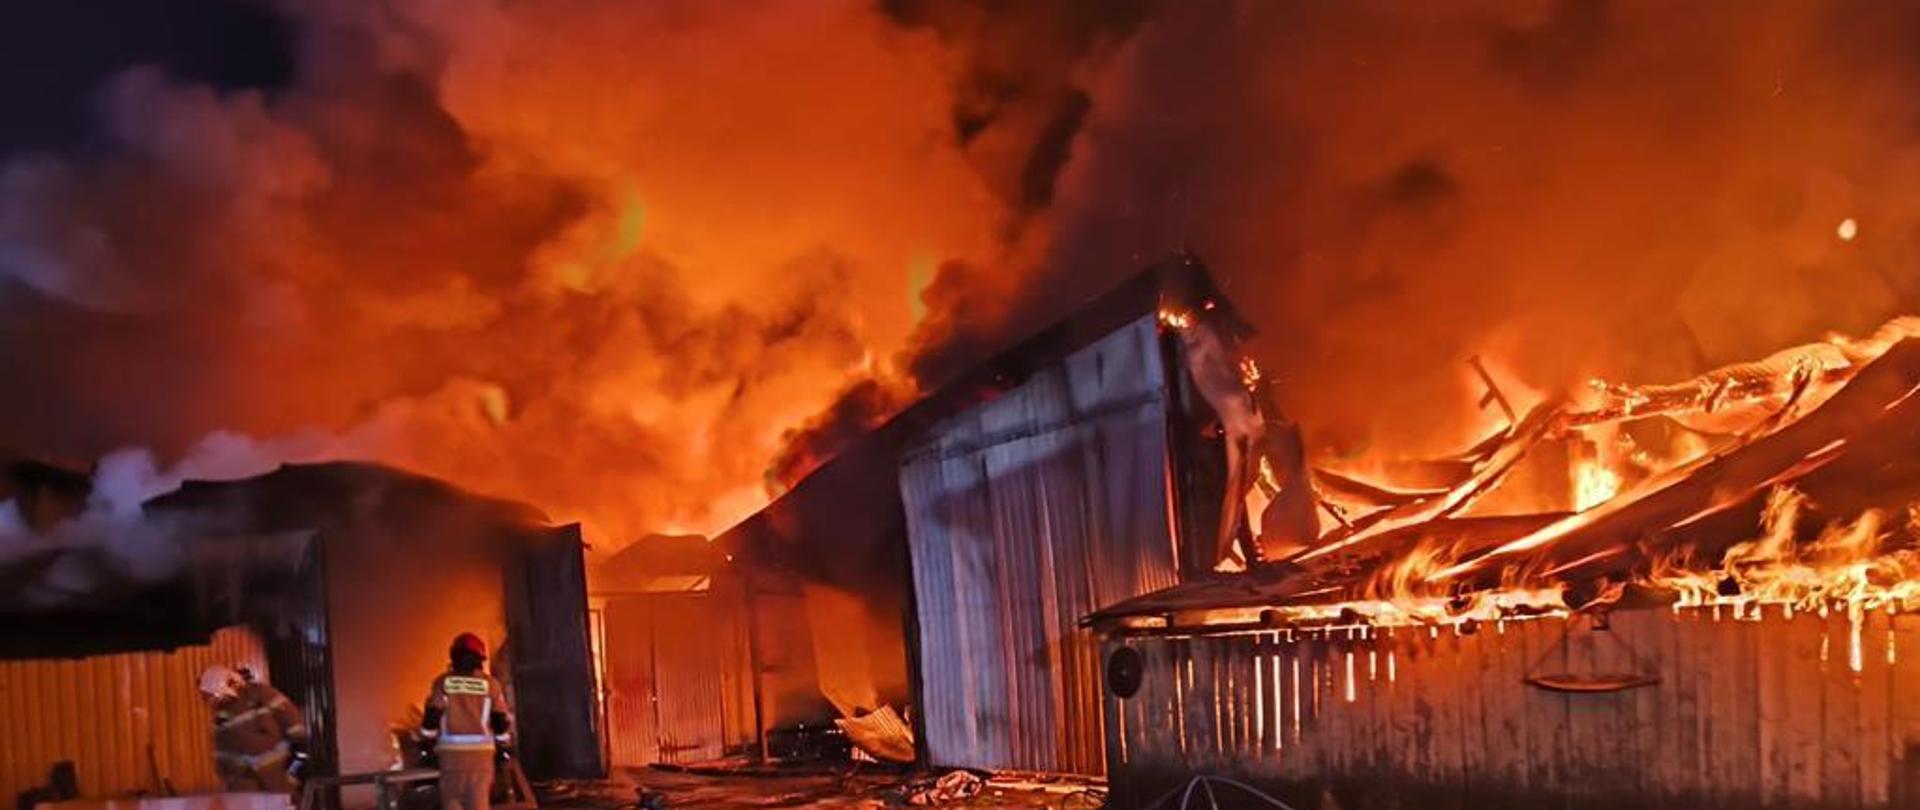 Pożar kompleksu budynków gospodarczych w miejscowości Podborek